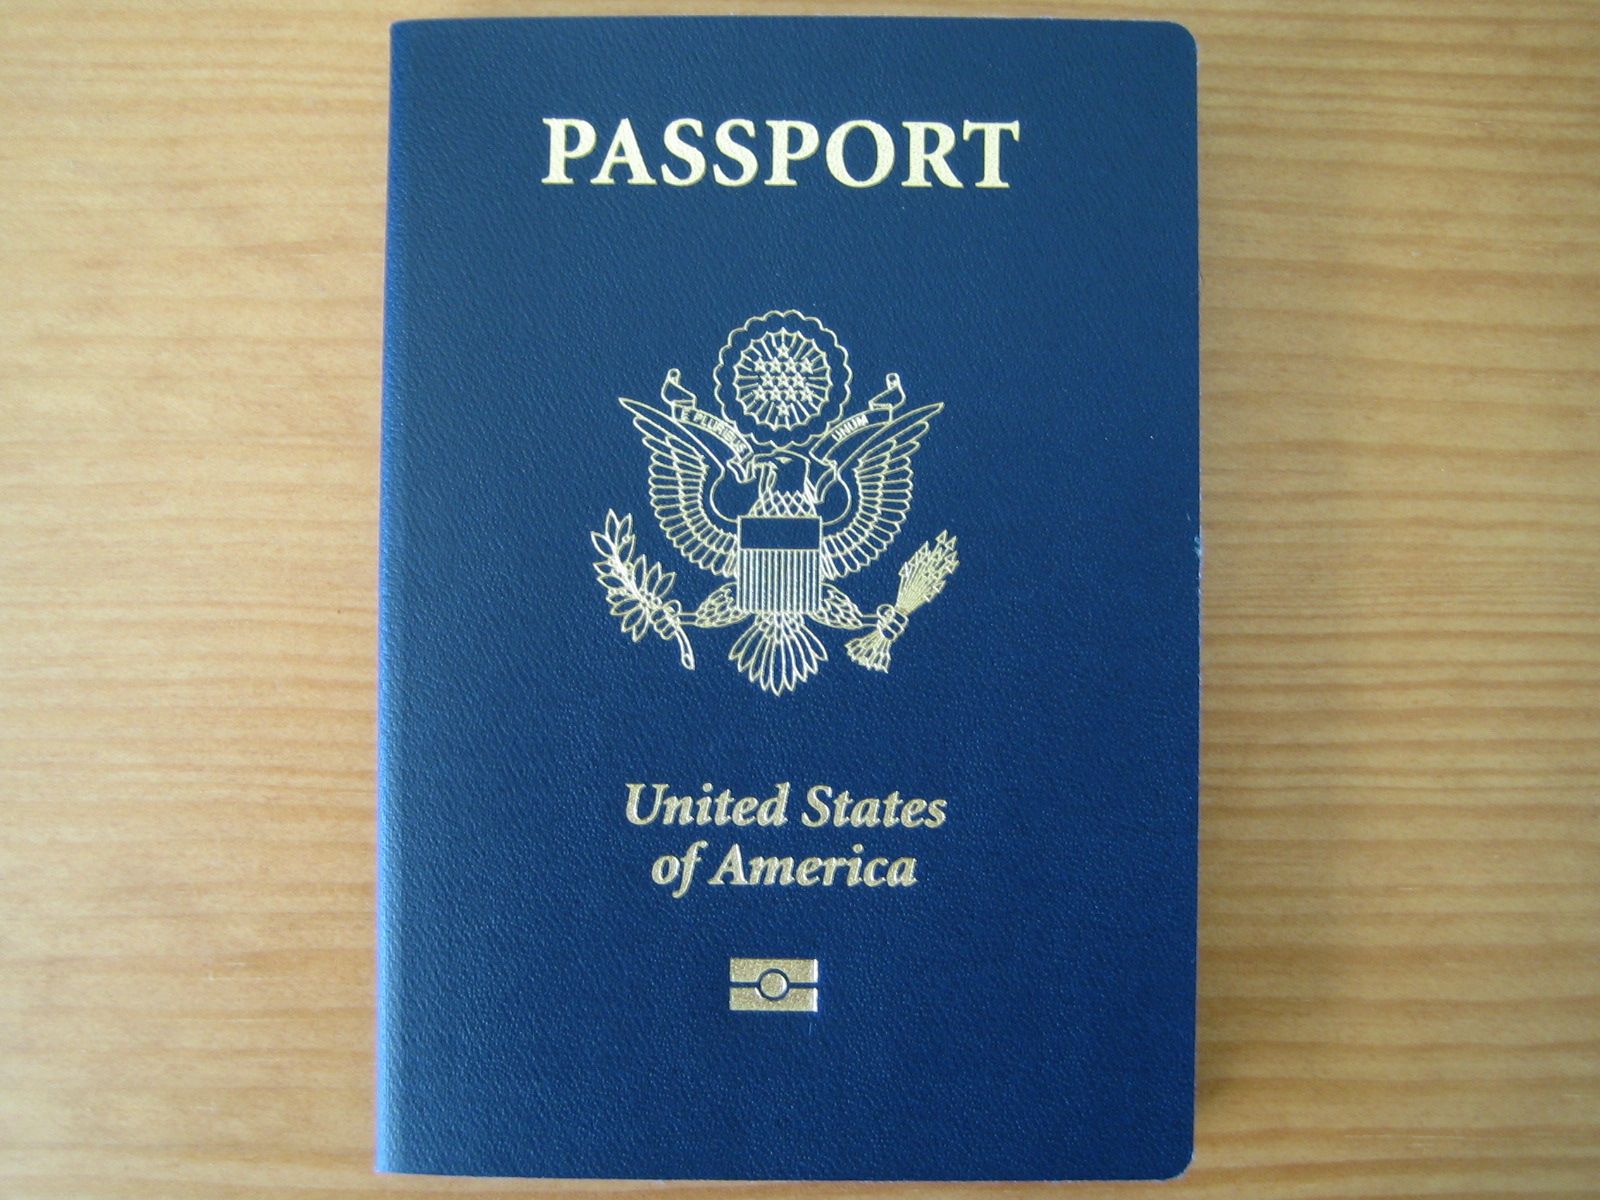 [Passport+6+29+2008.jpg]